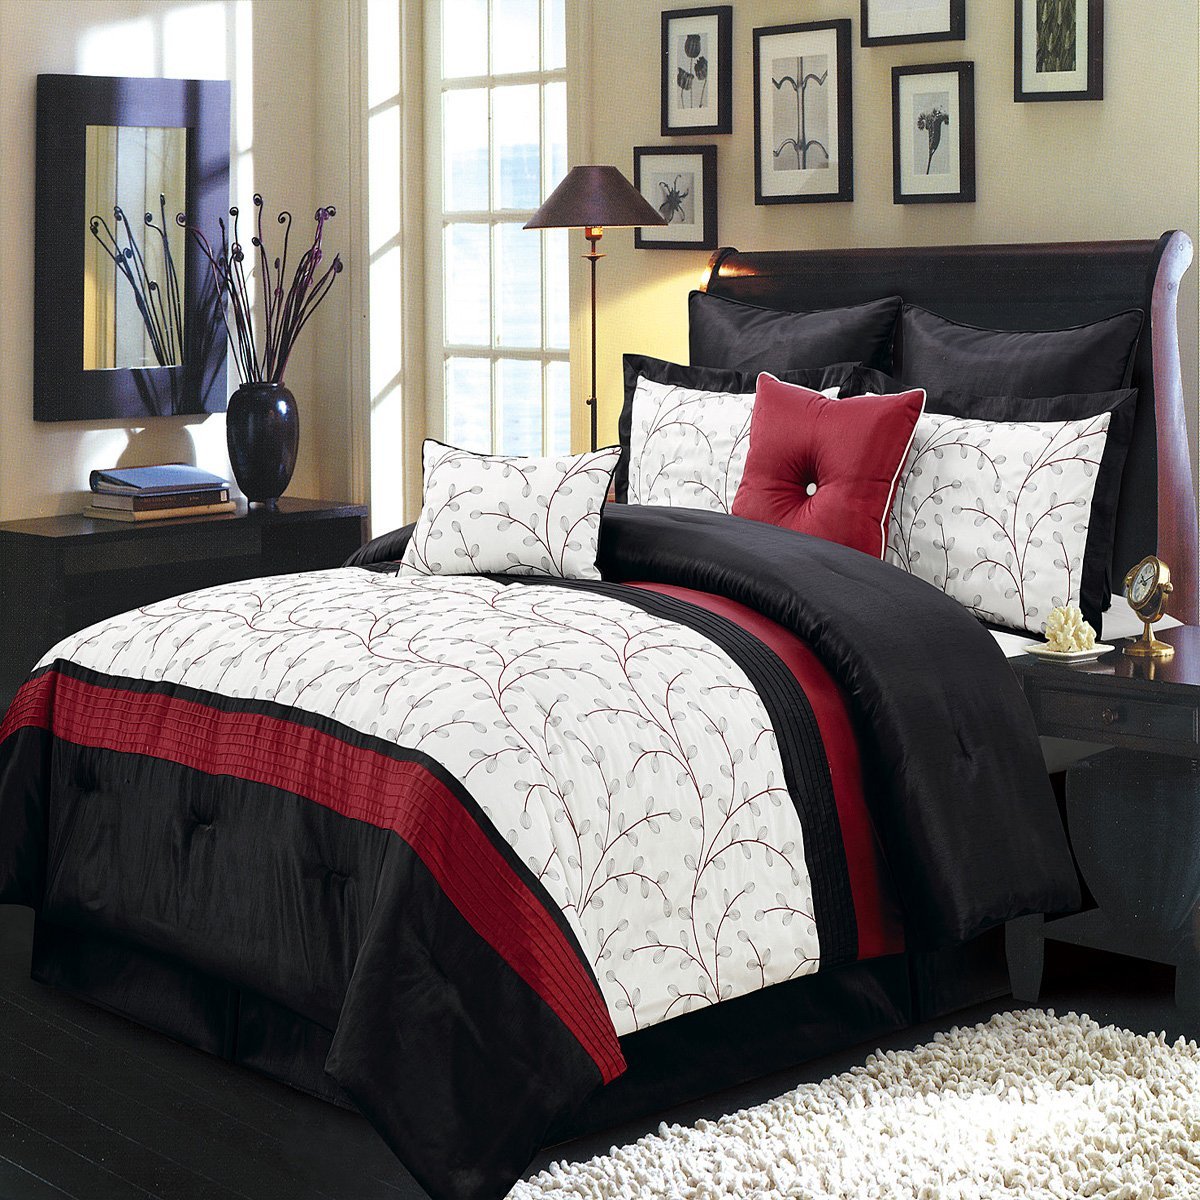 Black and Ivory Comforter & Bedding Sets